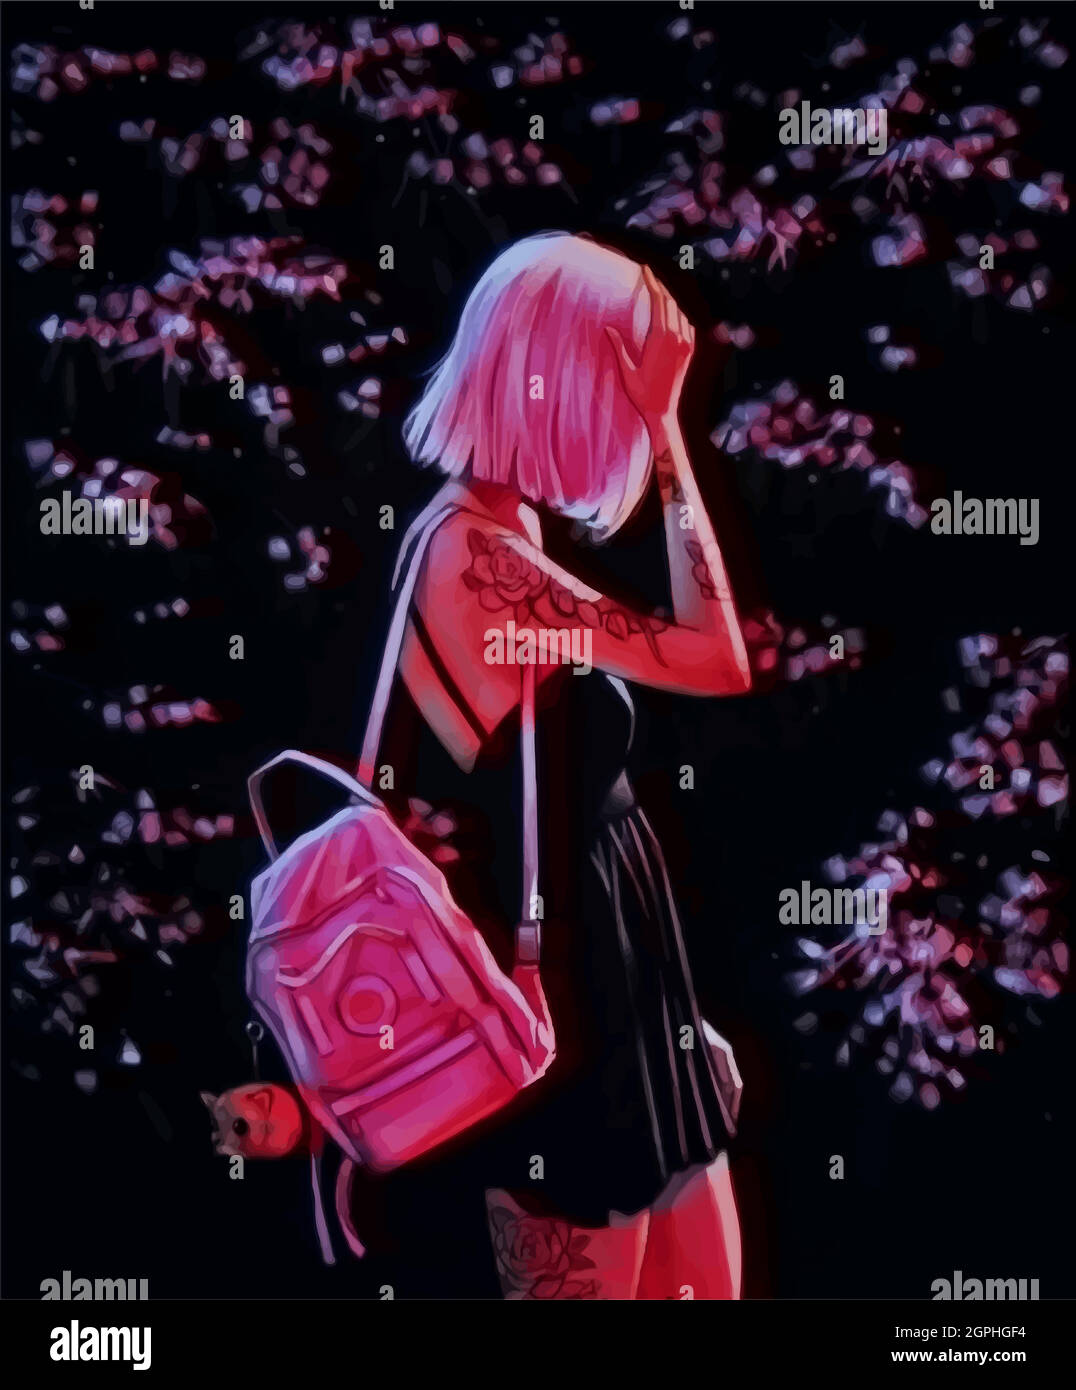 Ragazza ANIME con capelli rosa, zaino e gonna su sfondo sakura. Illustrazione Vettoriale